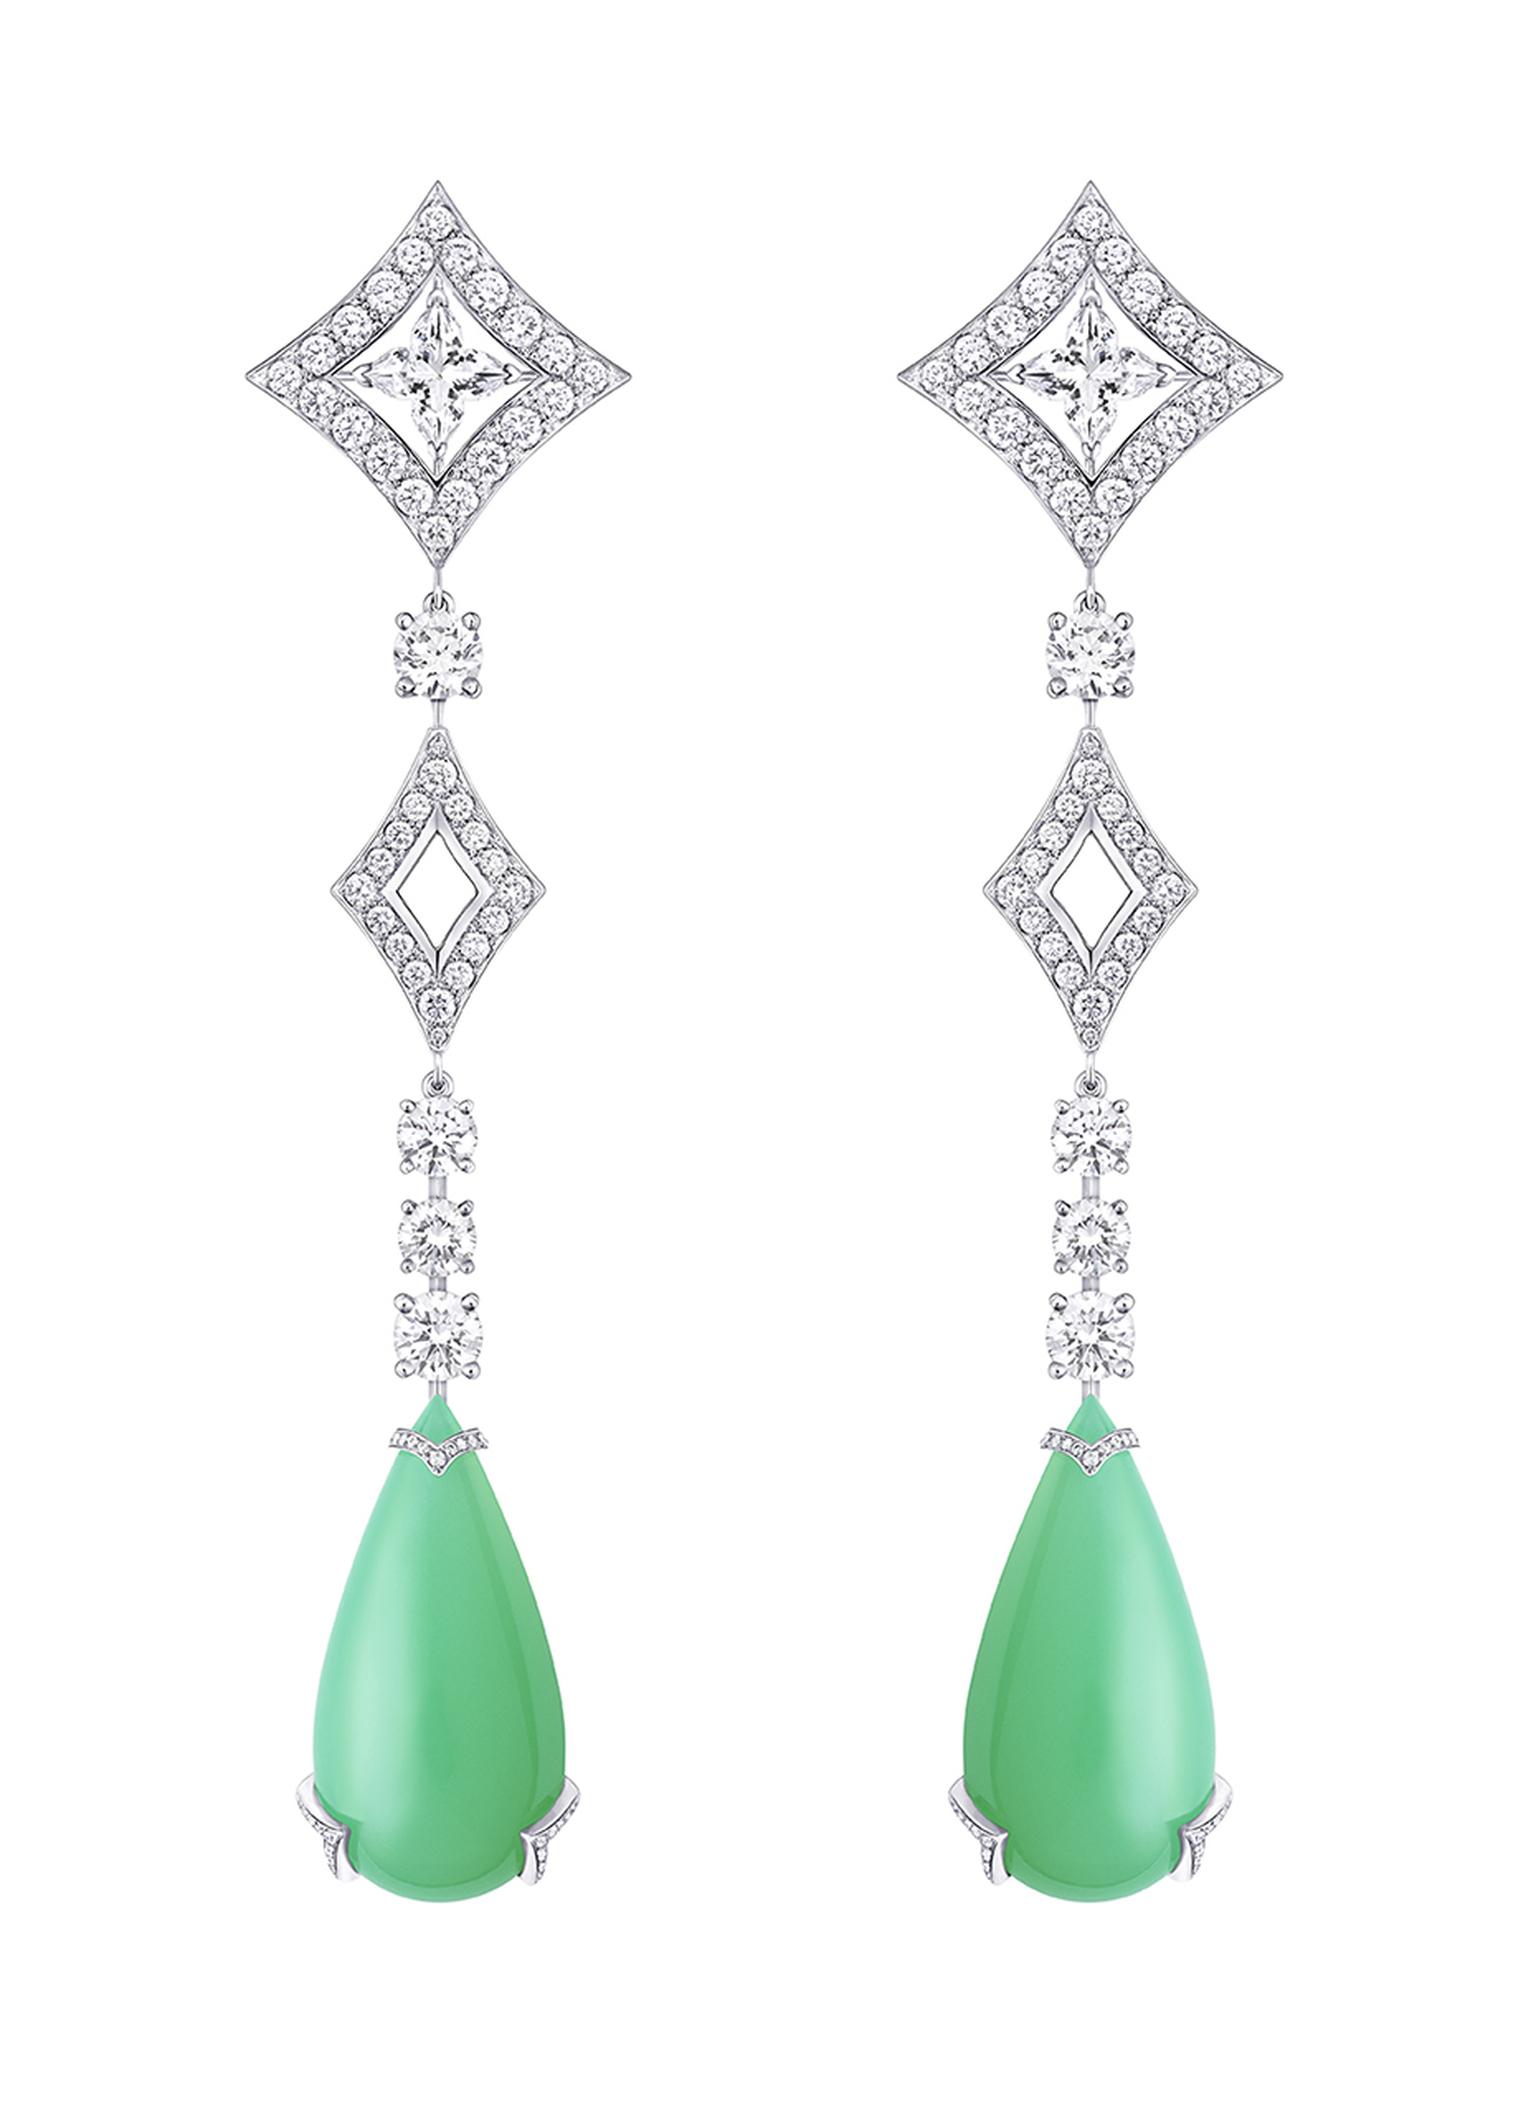 Louis Vuitton Acte V Metamorphosis high jewellery earrings